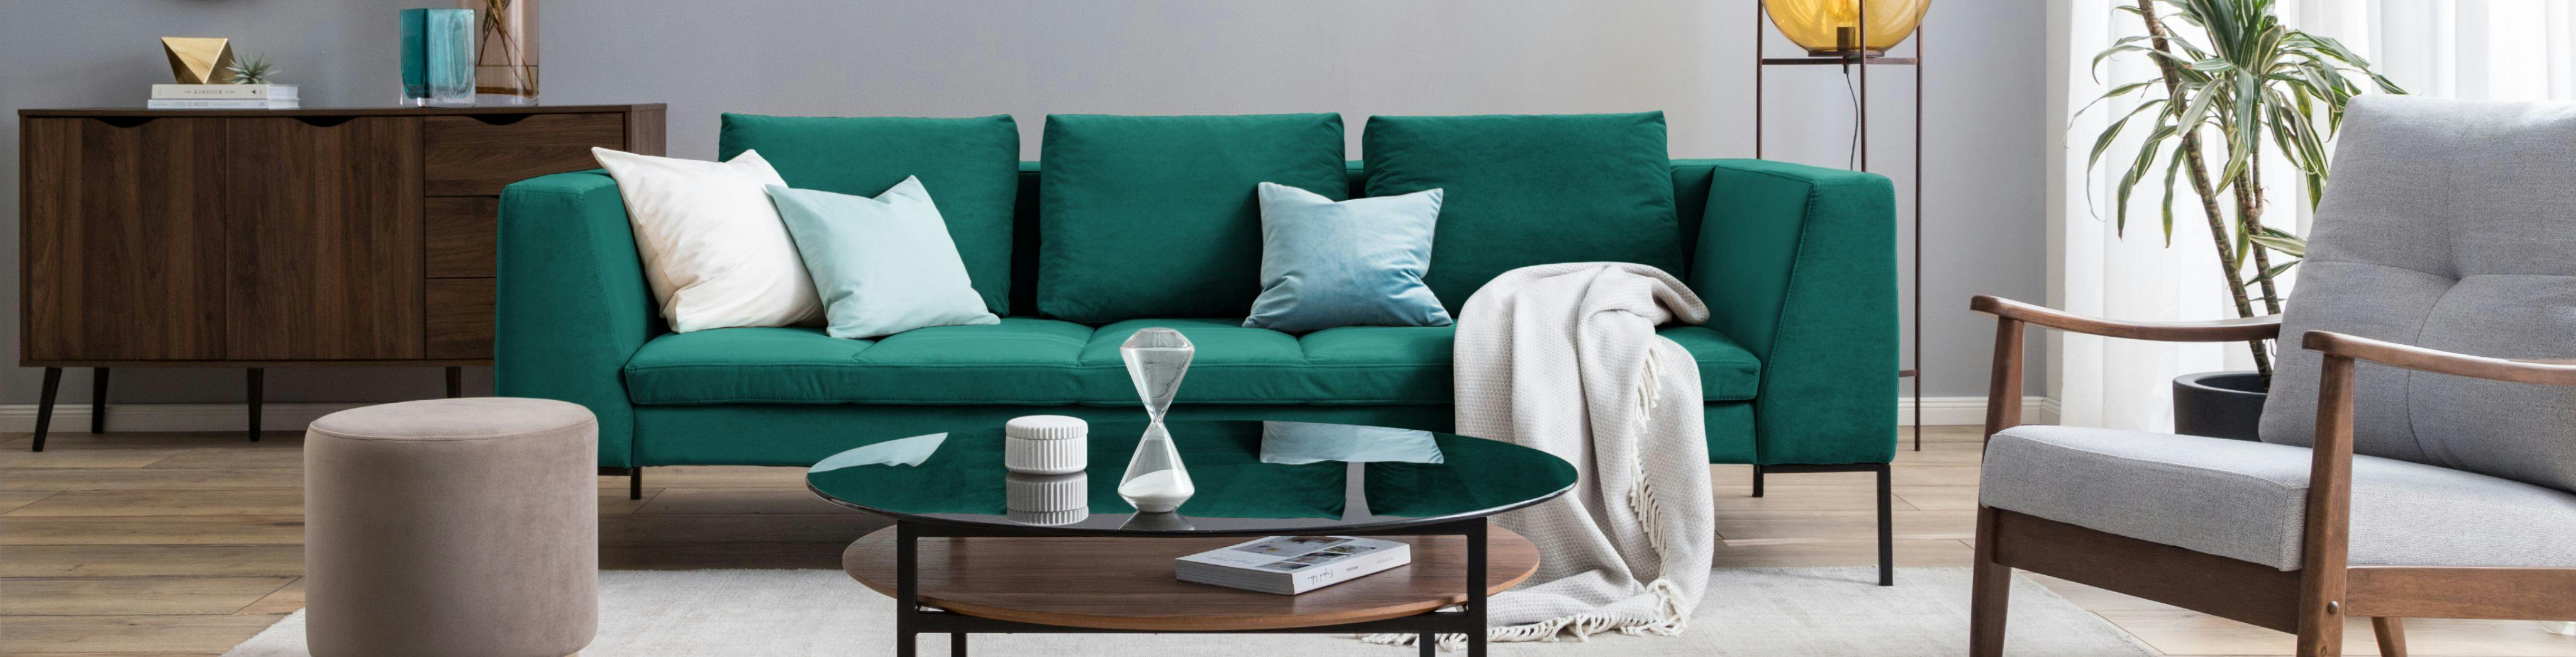 Comment nettoyer un canapé : conseils pratiques - IKEA CA